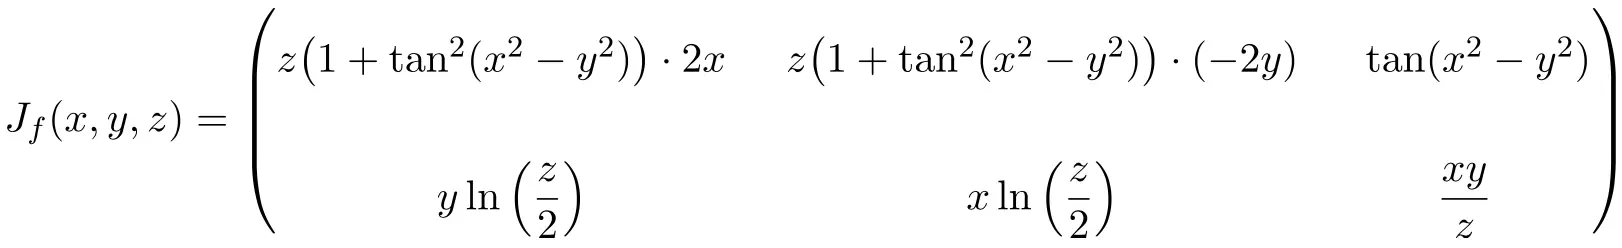 Exercício resolvido de matriz Jacobiana de 3 variáveis